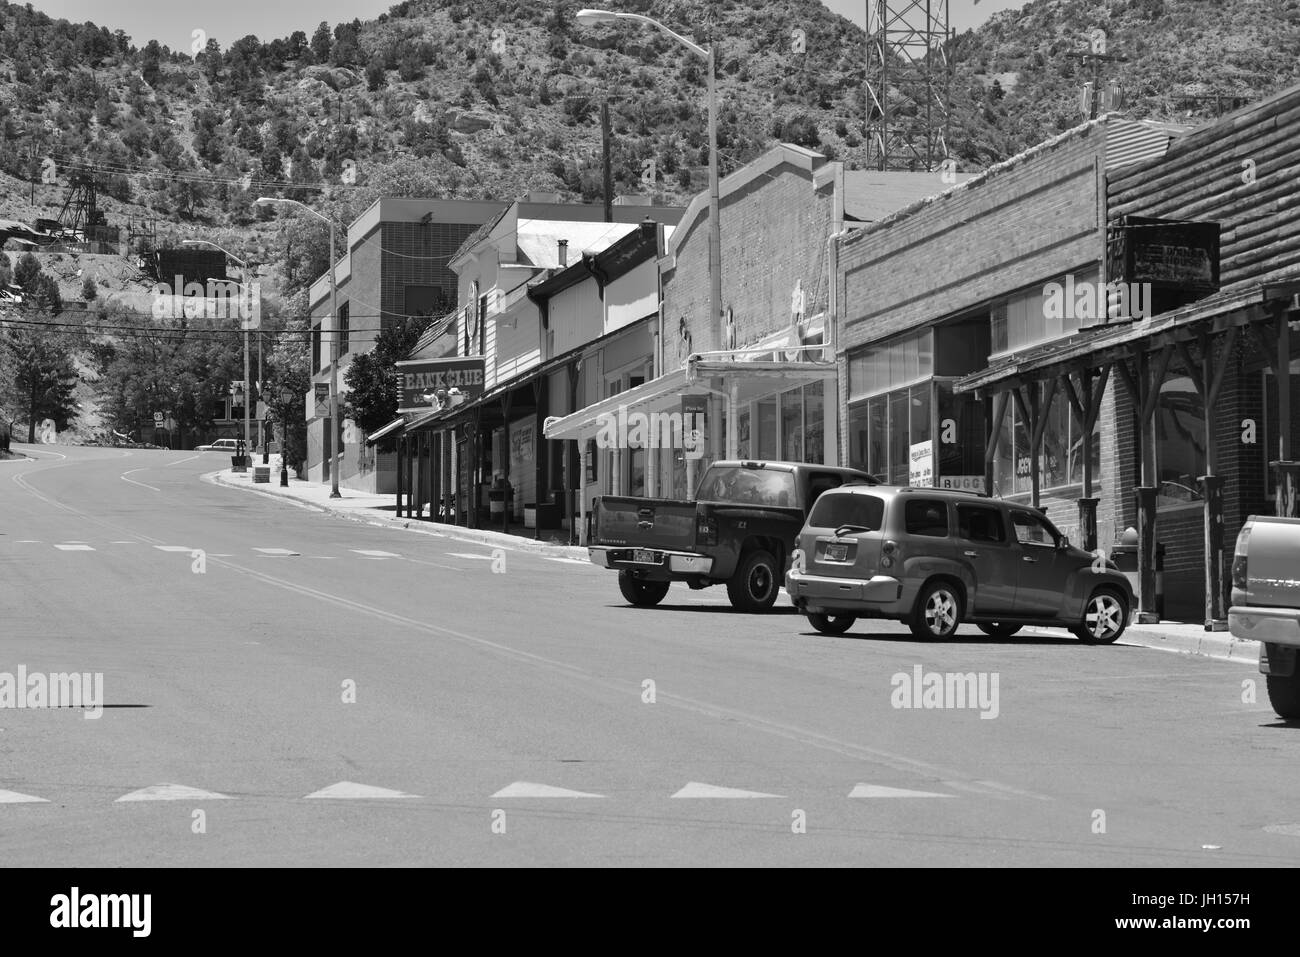 La strada principale di Pioche in Nevada Foto Stock